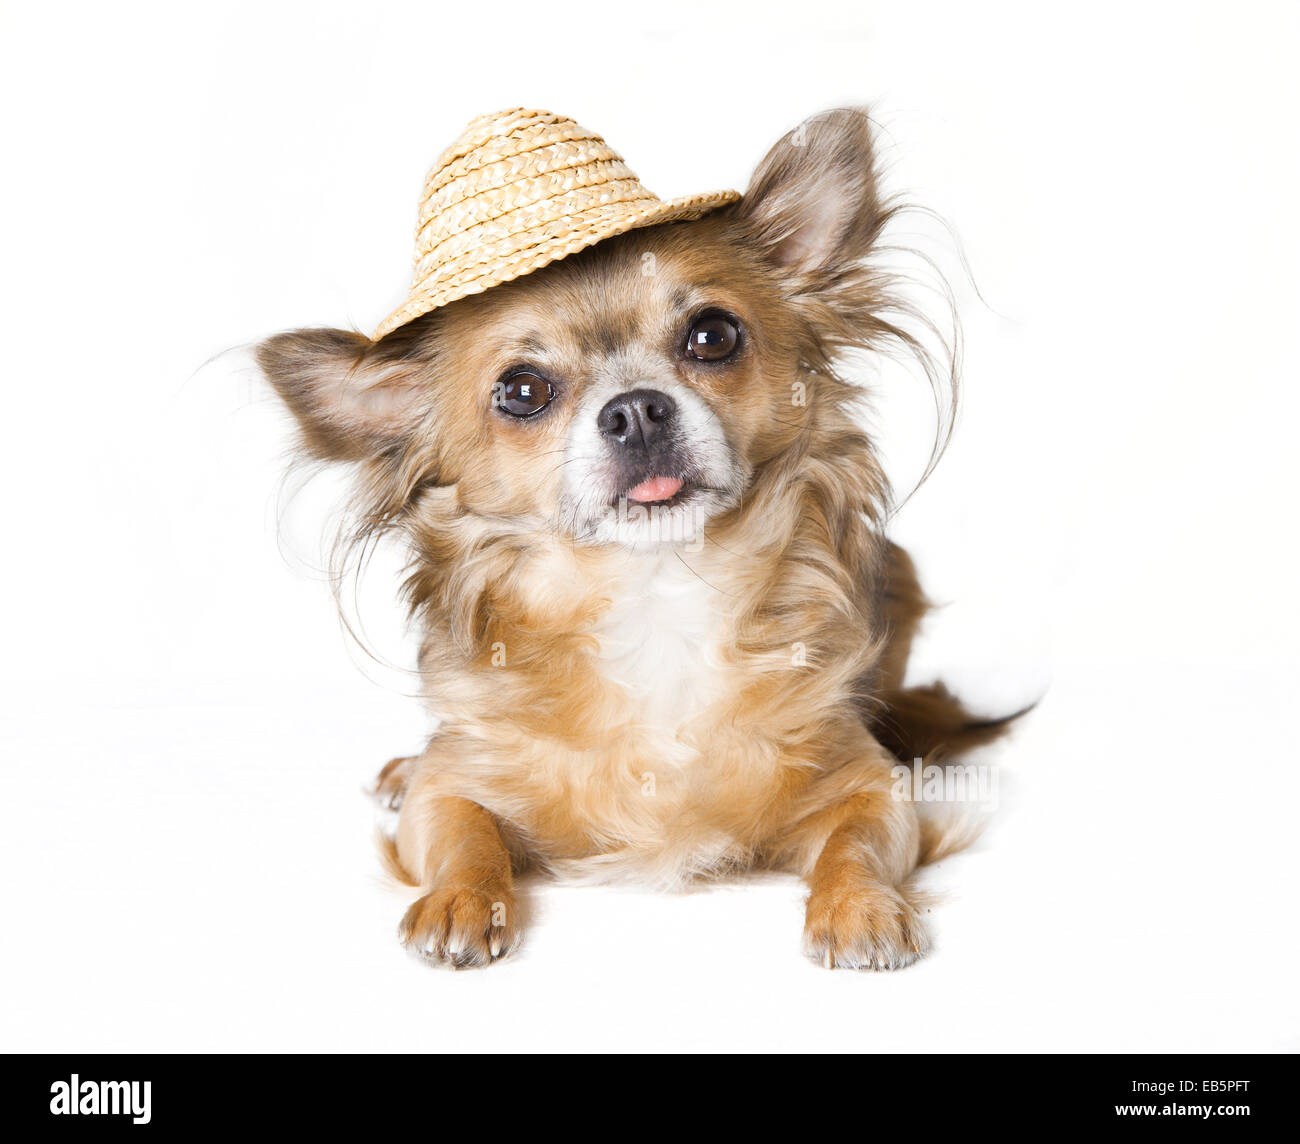 Petit chien chihuahua brun avec Chapeau en paille, fond blanc Photo Stock -  Alamy